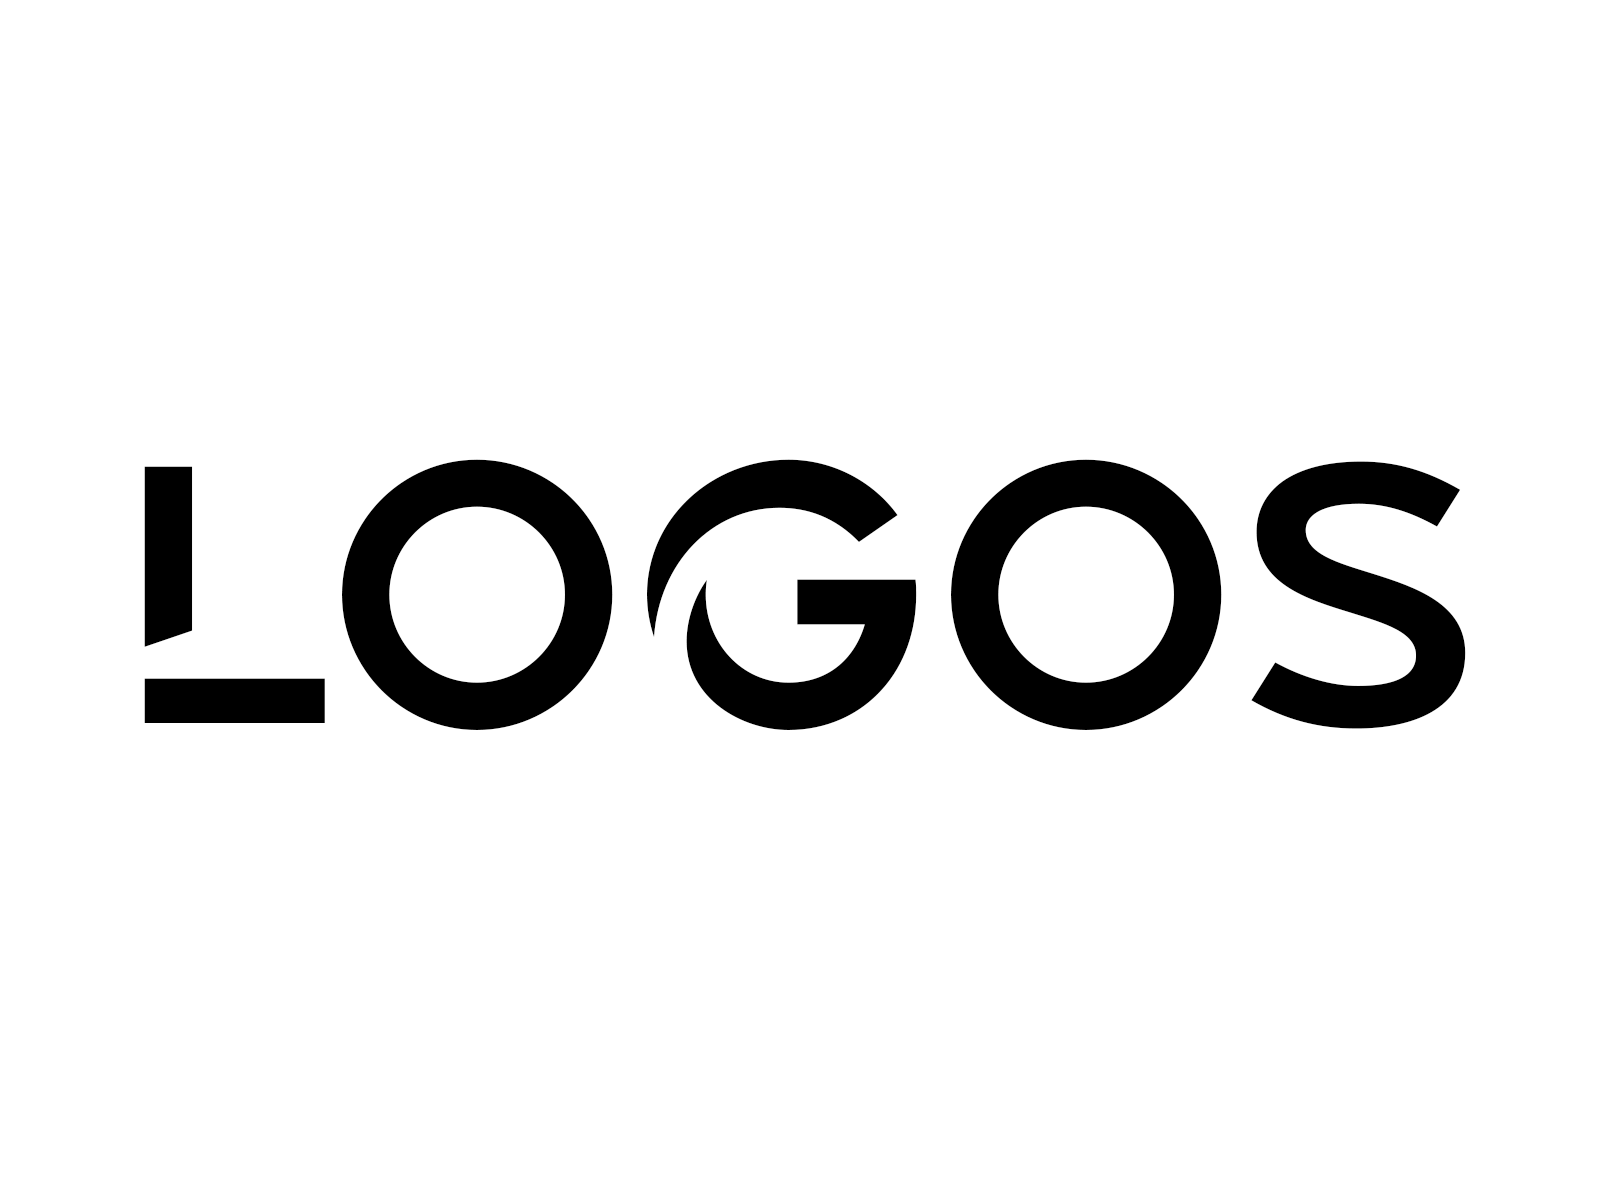 LOGOS